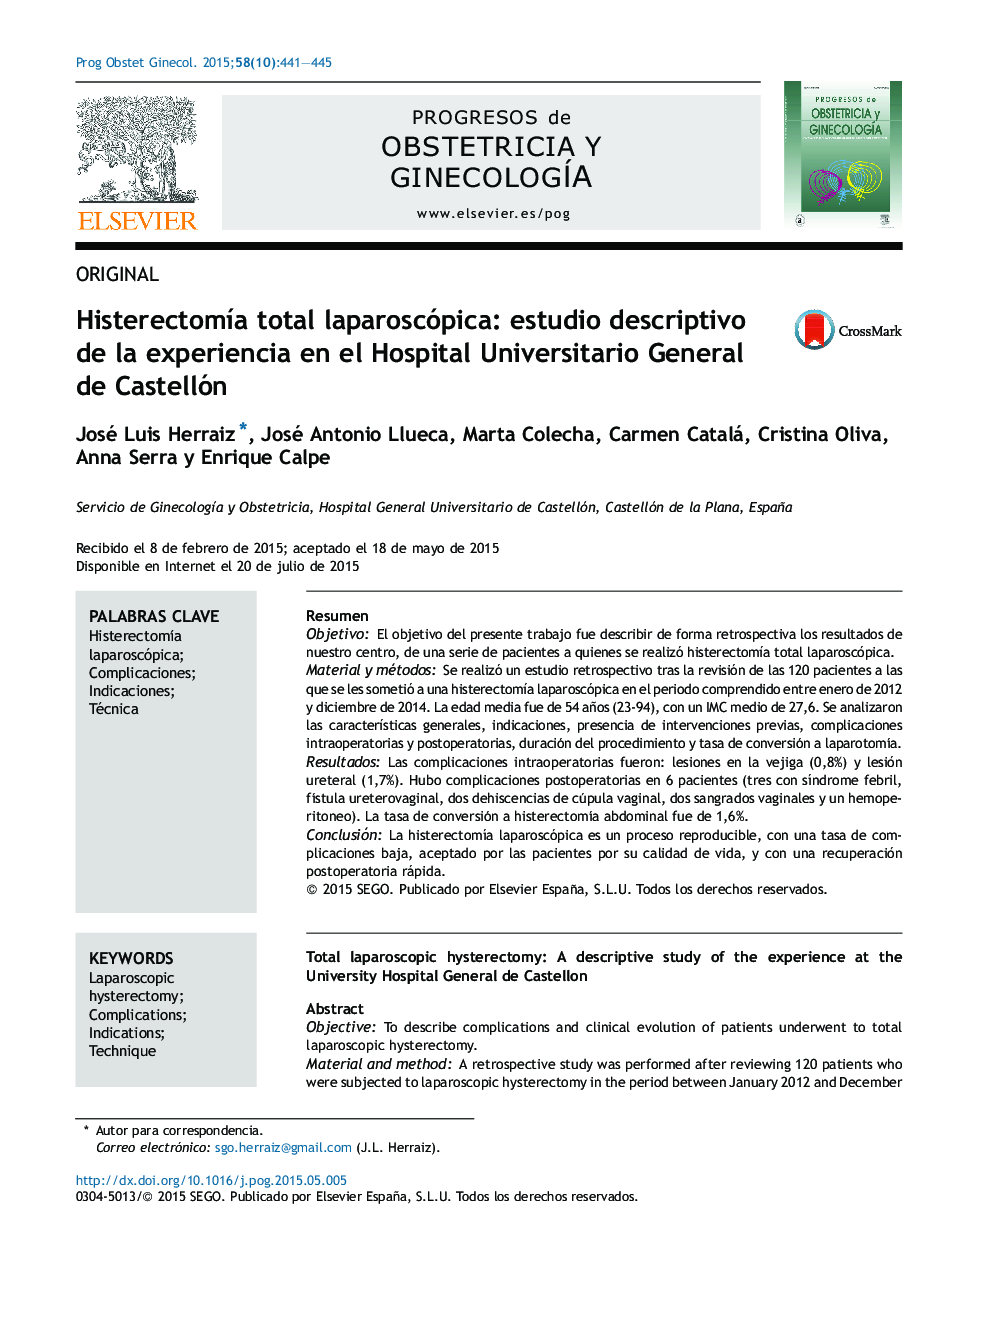 Histerectomía total laparoscópica: estudio descriptivo de la experiencia en el Hospital Universitario General de Castellón